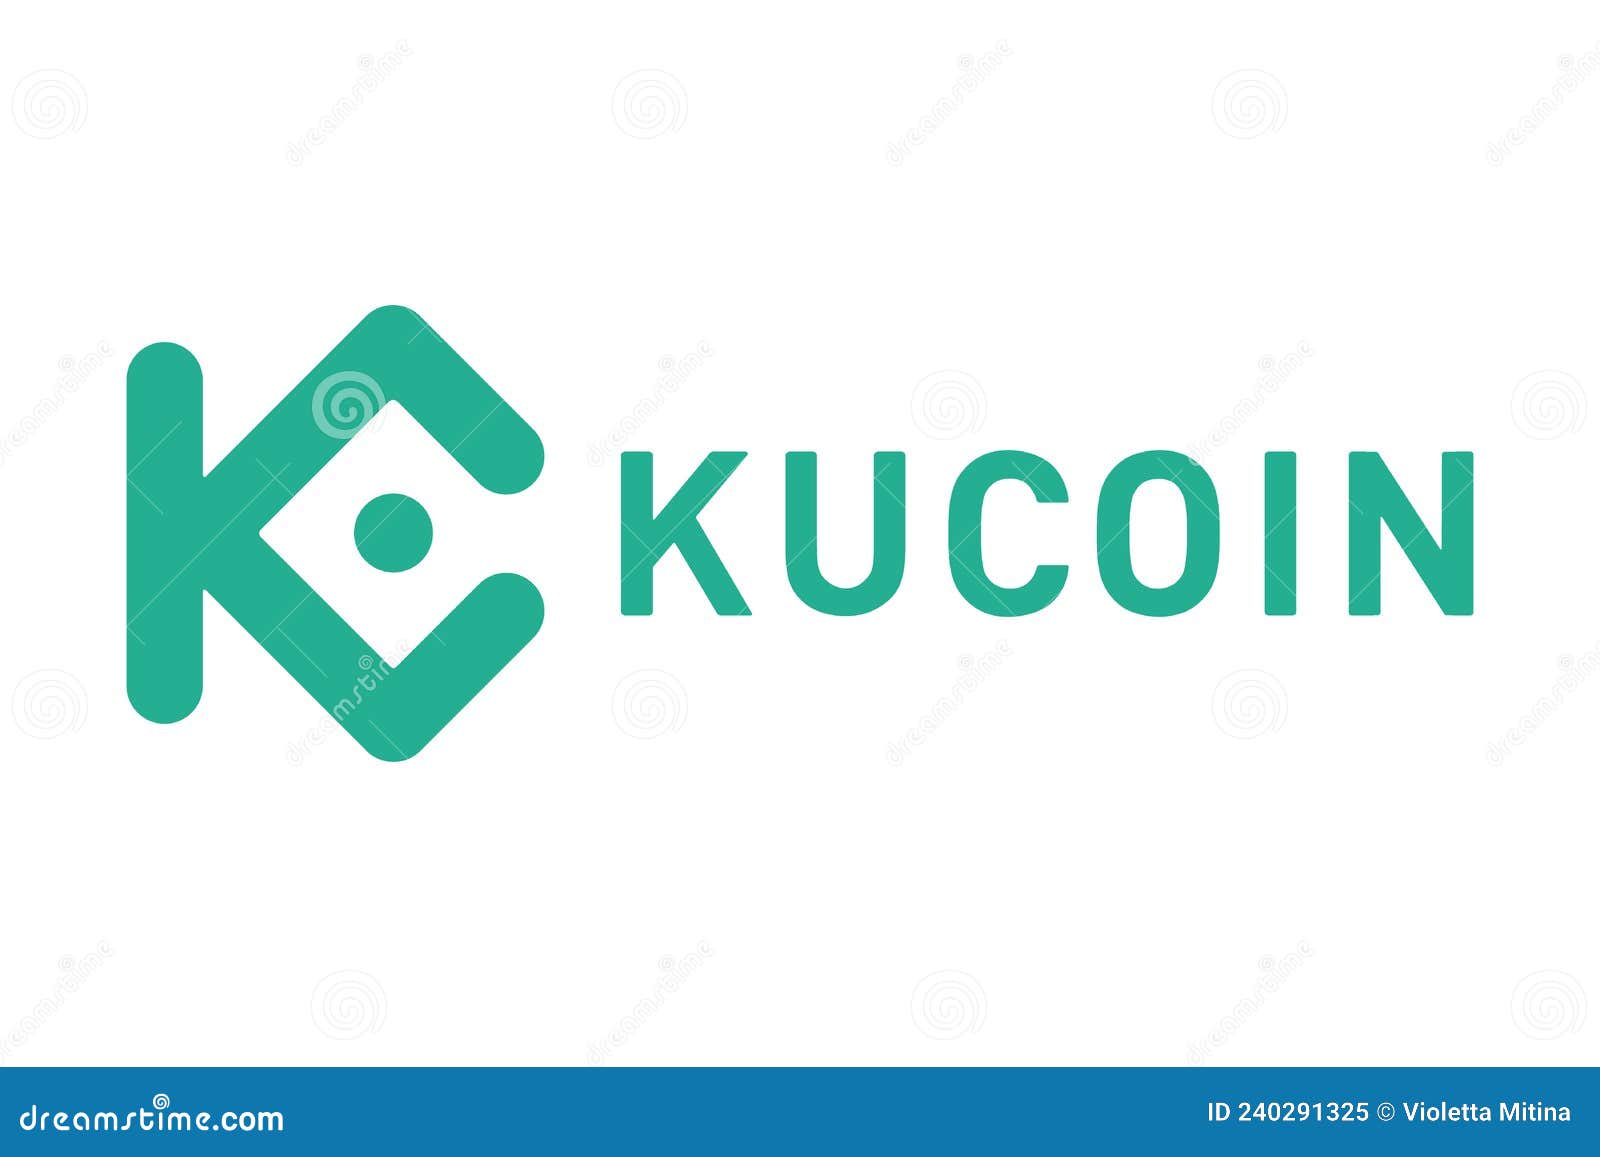 kucoin crypto ticker symbol